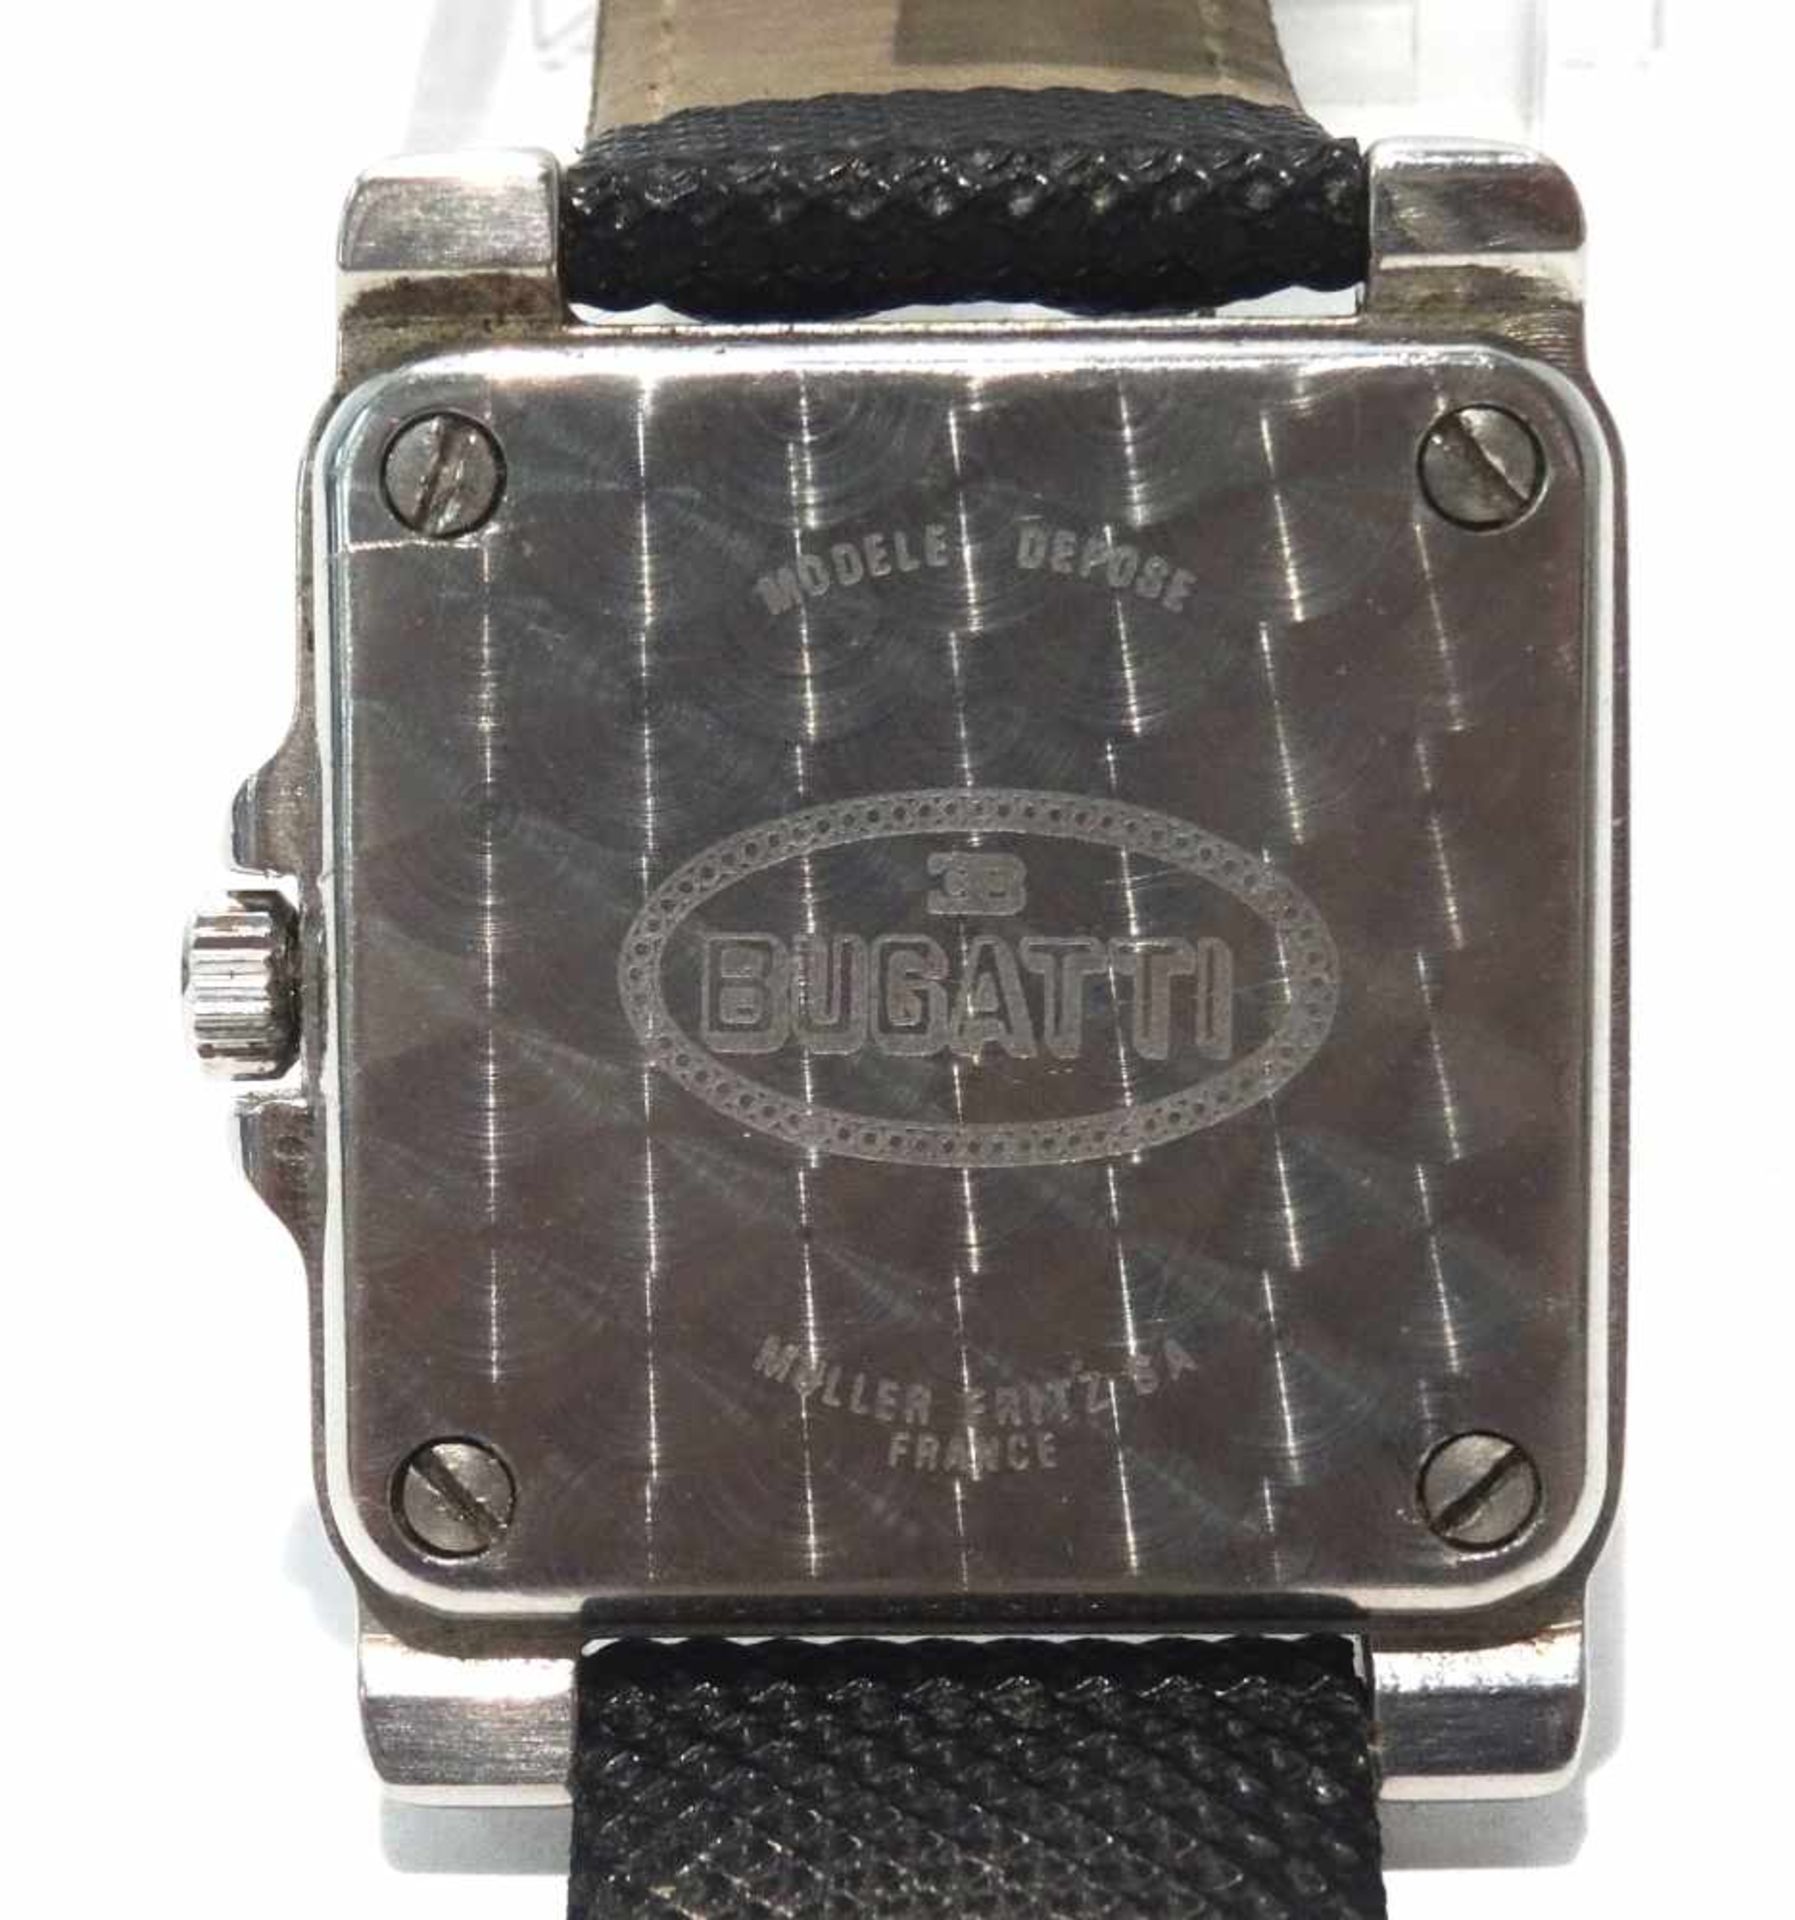 Bugatti Herrenqurazuhr Medium mit Kunststoffband eckige Bugattiuhr mit Quarzwerk, Datum an der 6, - Bild 3 aus 3